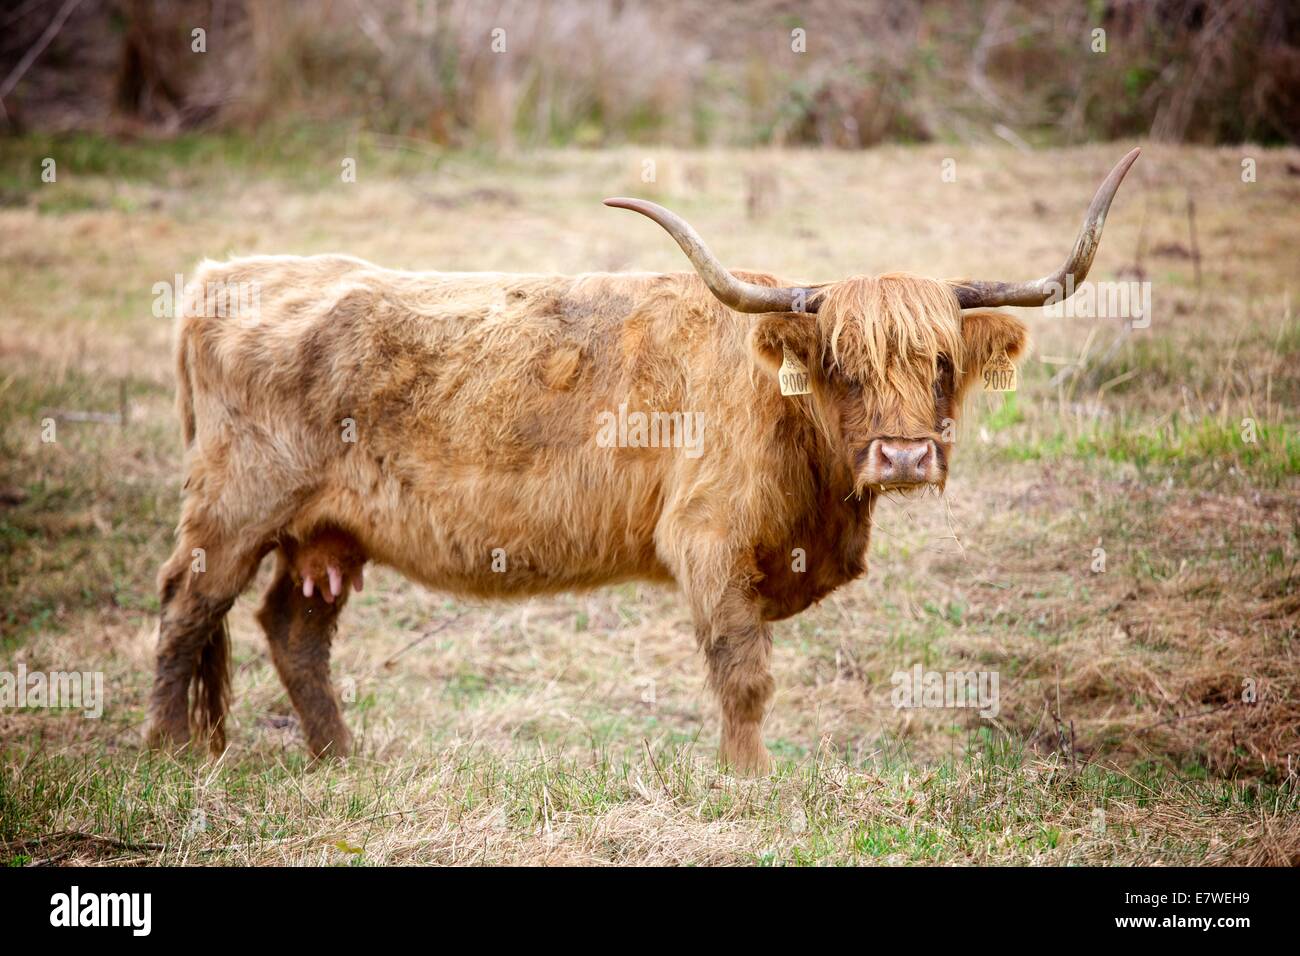 Scottish Highland ganado son conocidos por ser excepcionalmente resistente y fácil de cultivar. También son bellos animales! Foto de stock